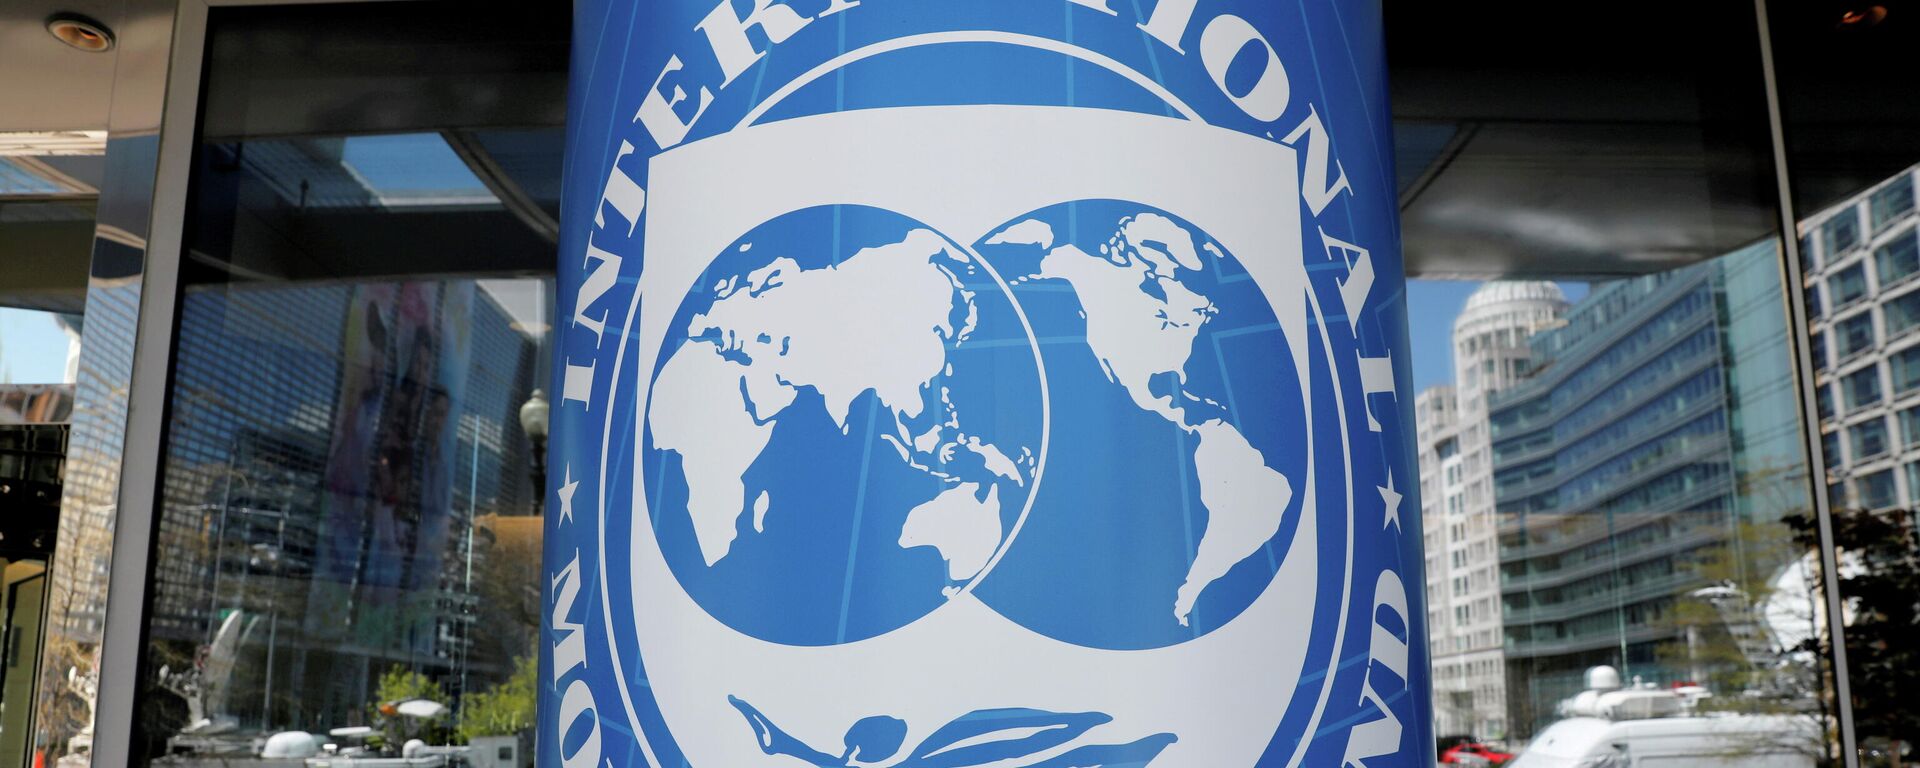 Логотип Международного валютного фонда у штаб-квартиры МВФ - Sputnik Беларусь, 1920, 25.08.2021